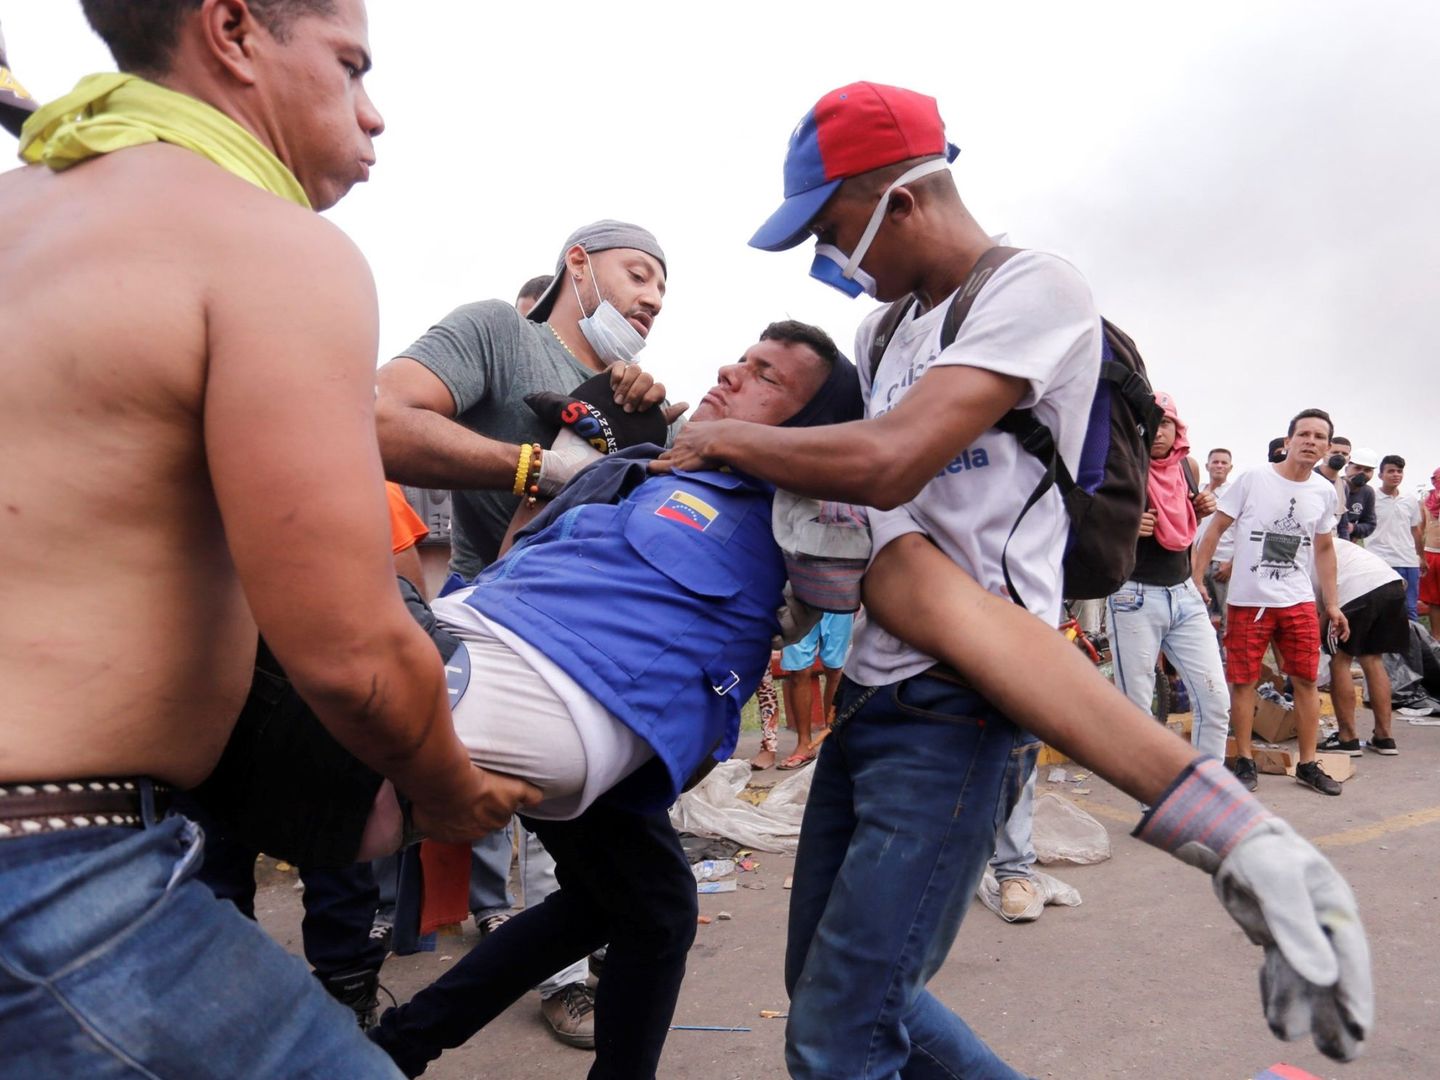 Un hombre herido durante los enfrentamientos es ayudado en Ureña, Venezuela. (EFE)